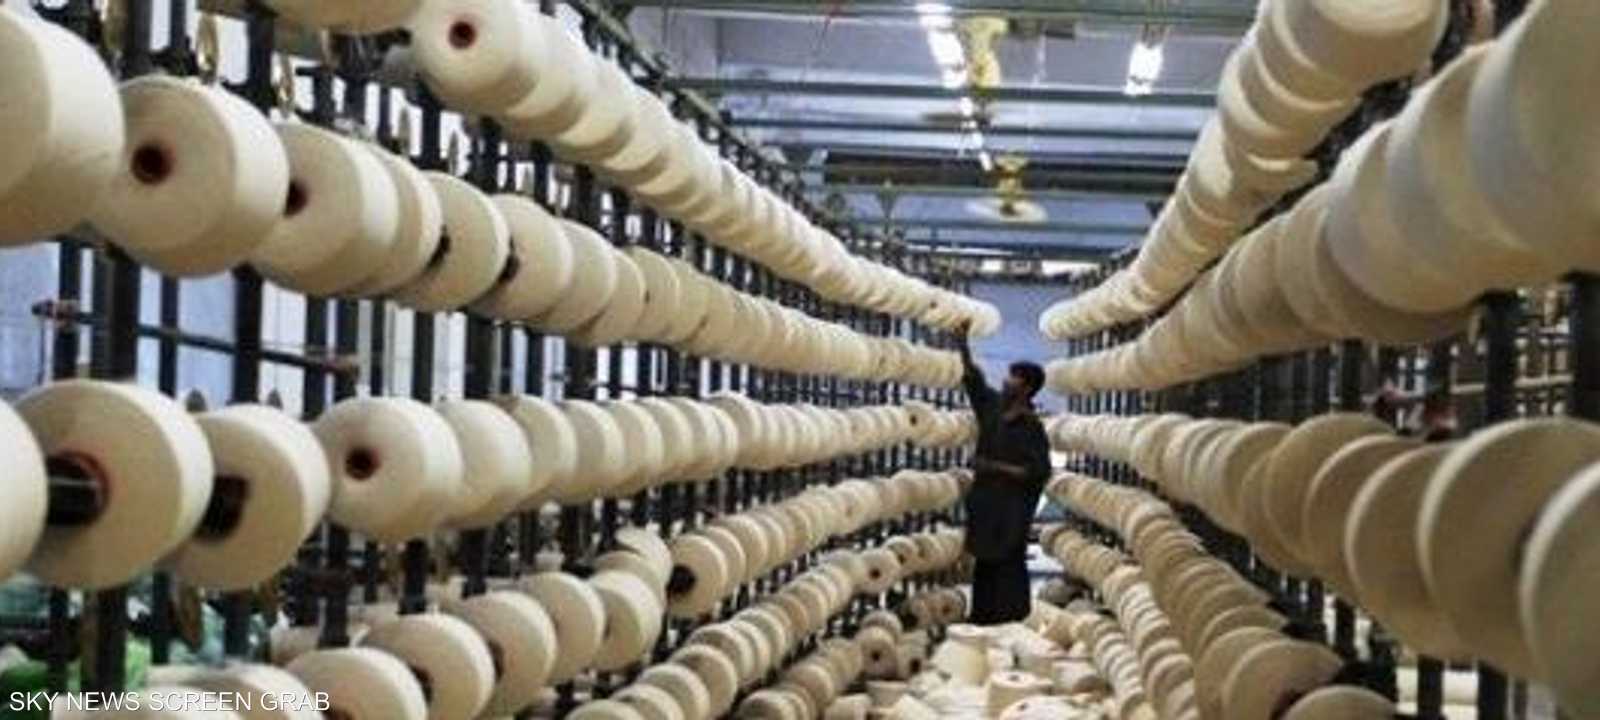 مصر تعتزم افتاح أكبر مصنع غزل بالعالم